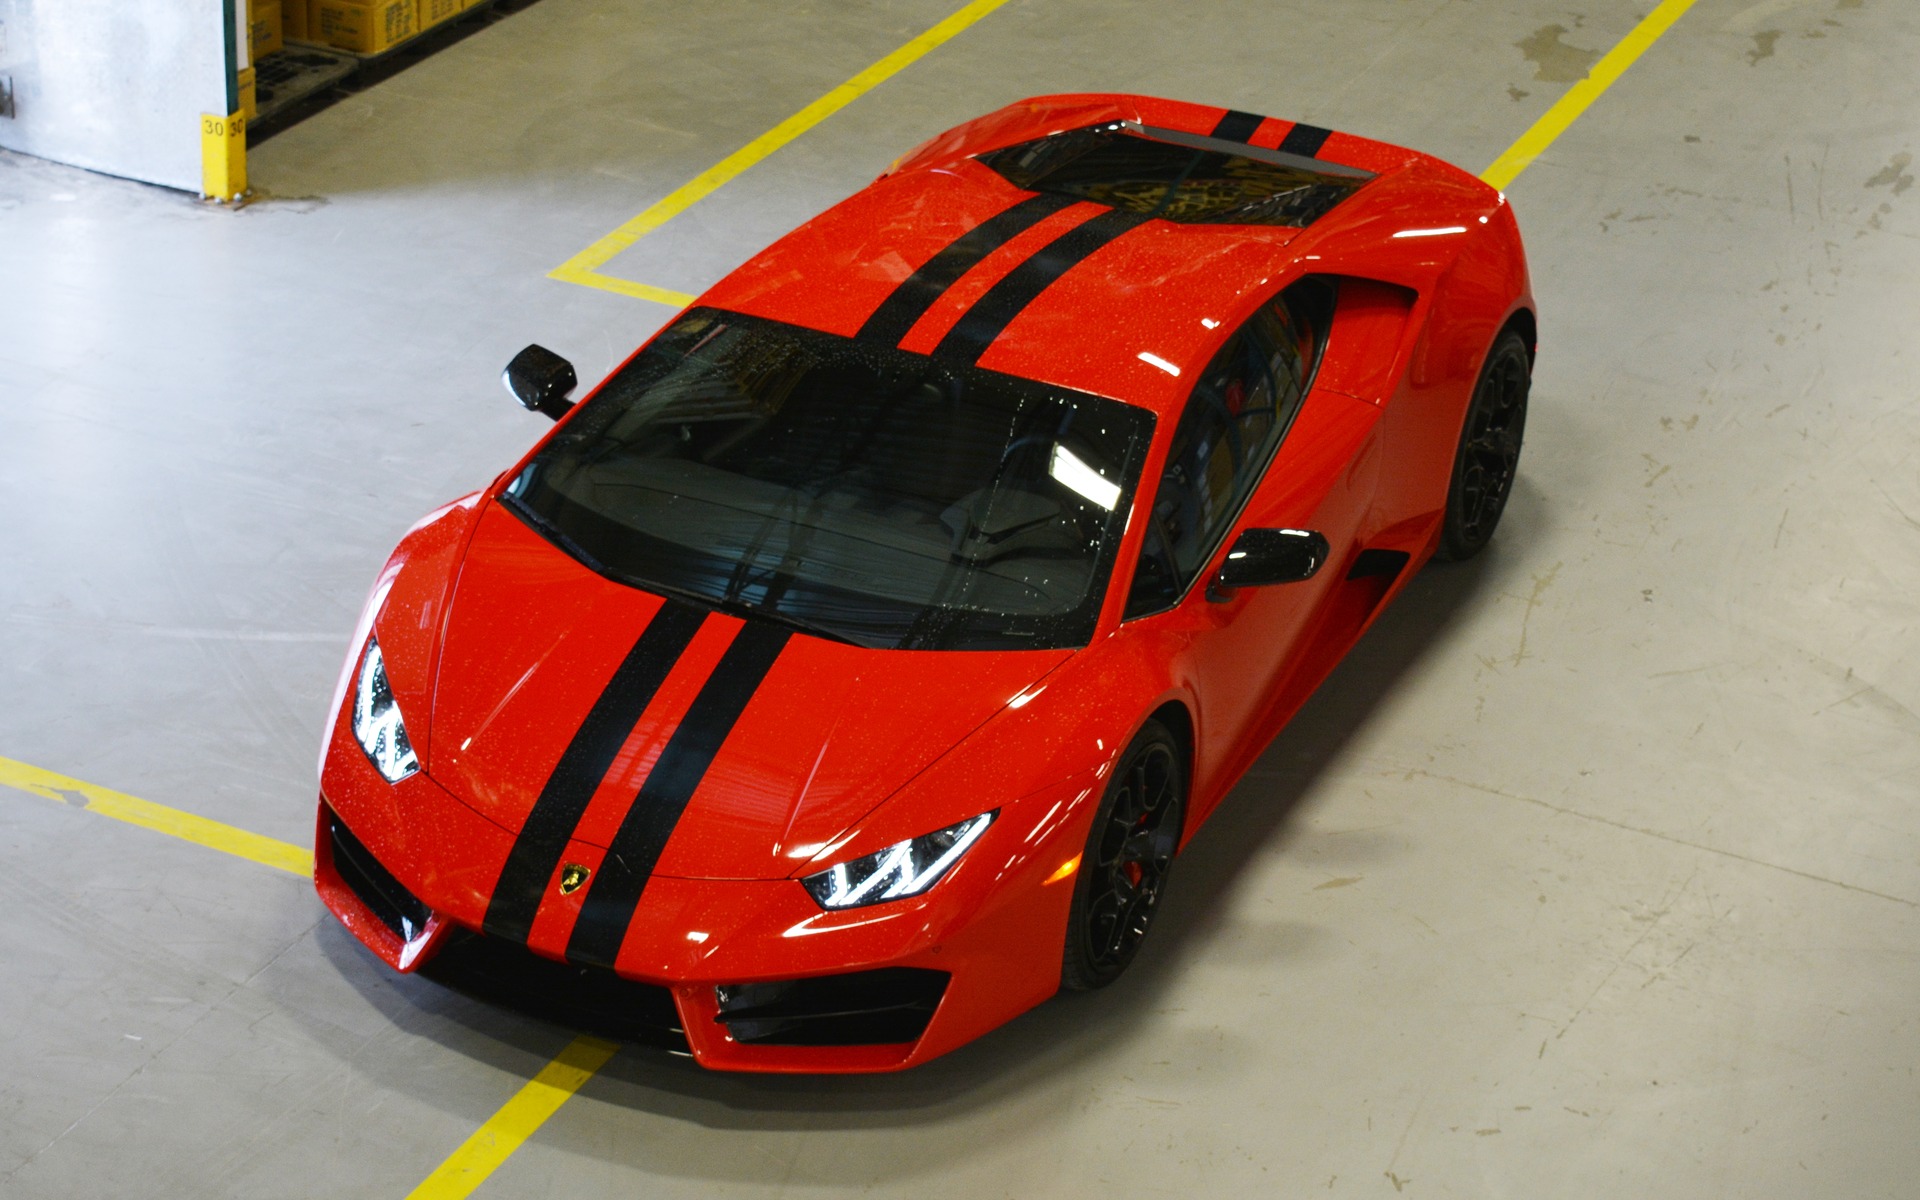 La voiture choisie par Seleen Alrishan, la Lamborghini Hurácan.